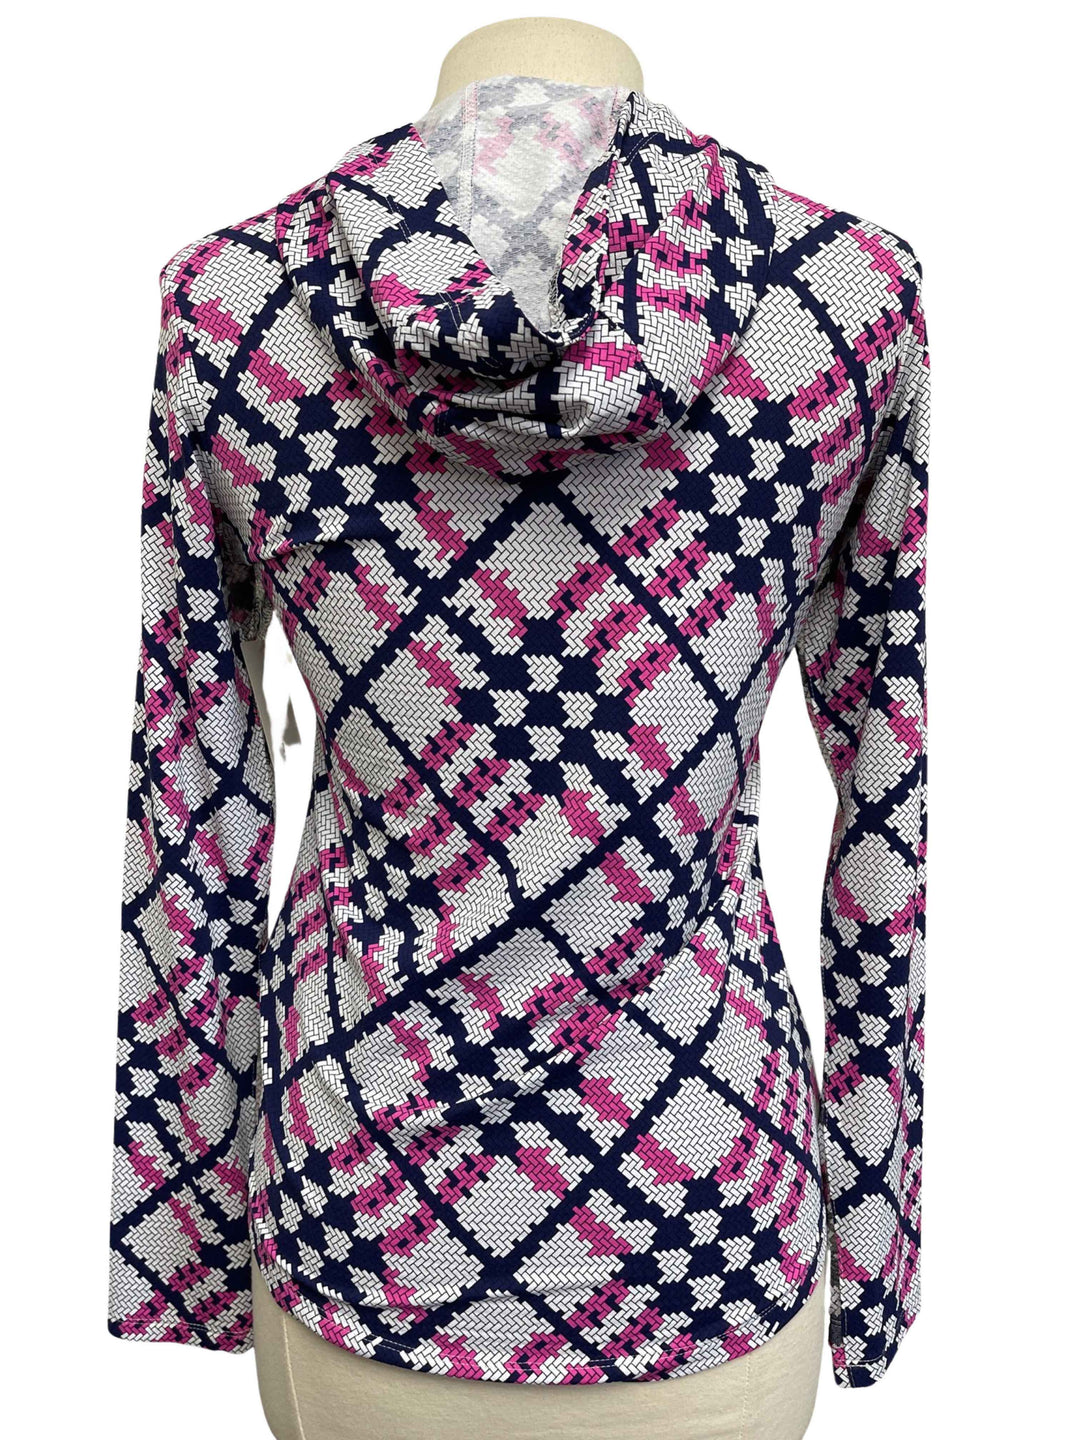 IBKUL Sonika Print Hooded Long Sleeve- Pink/Navy - Size Small - Skorzie